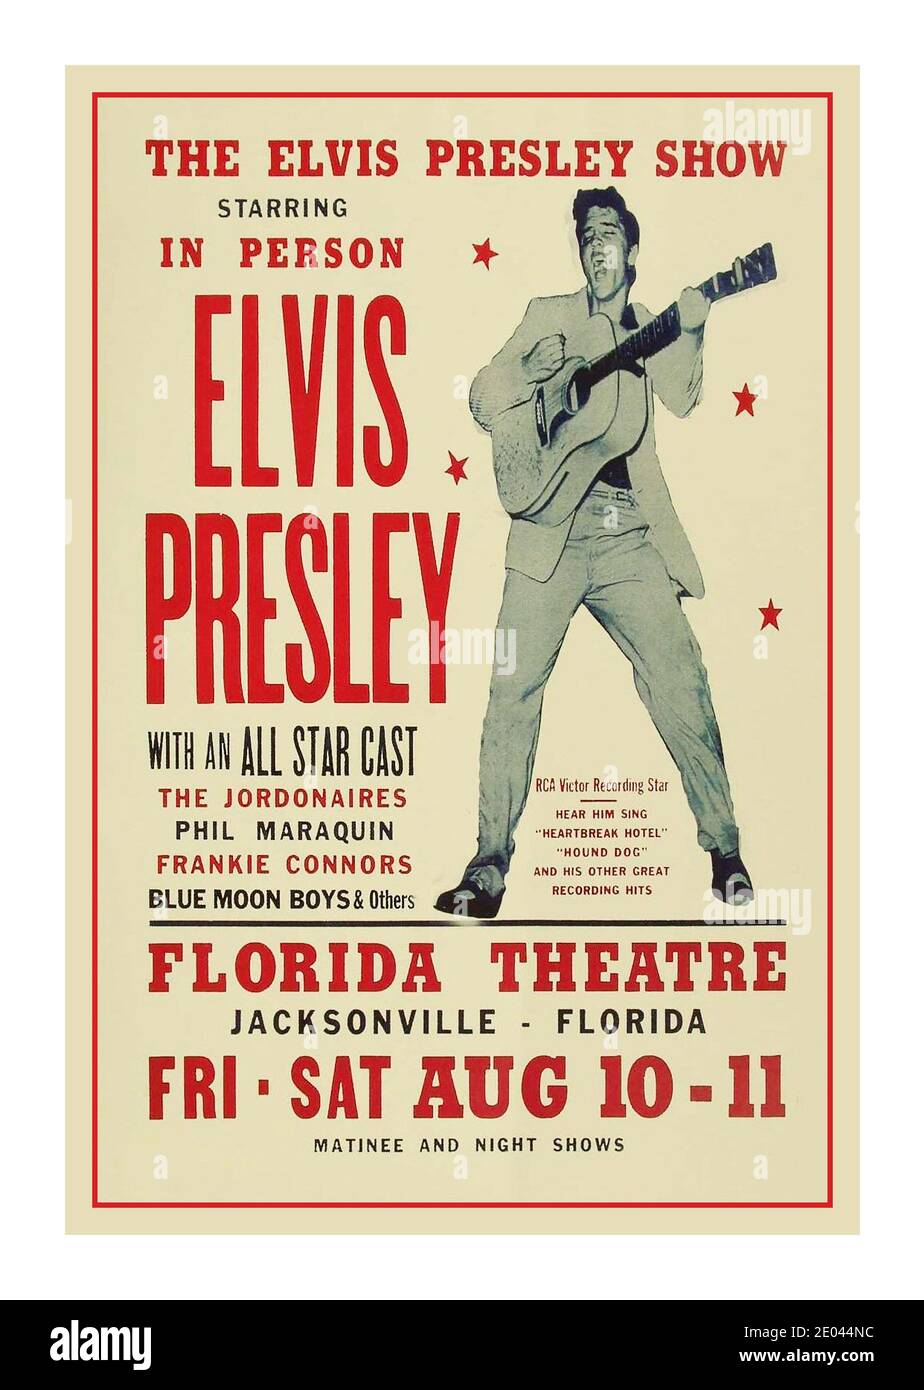 Elvis Presley 1950s Show Vintage Poster für persönliche Performance im Florida Theater in Jacksonville, Florida am 10. Und 11. August 1956 Stockfoto